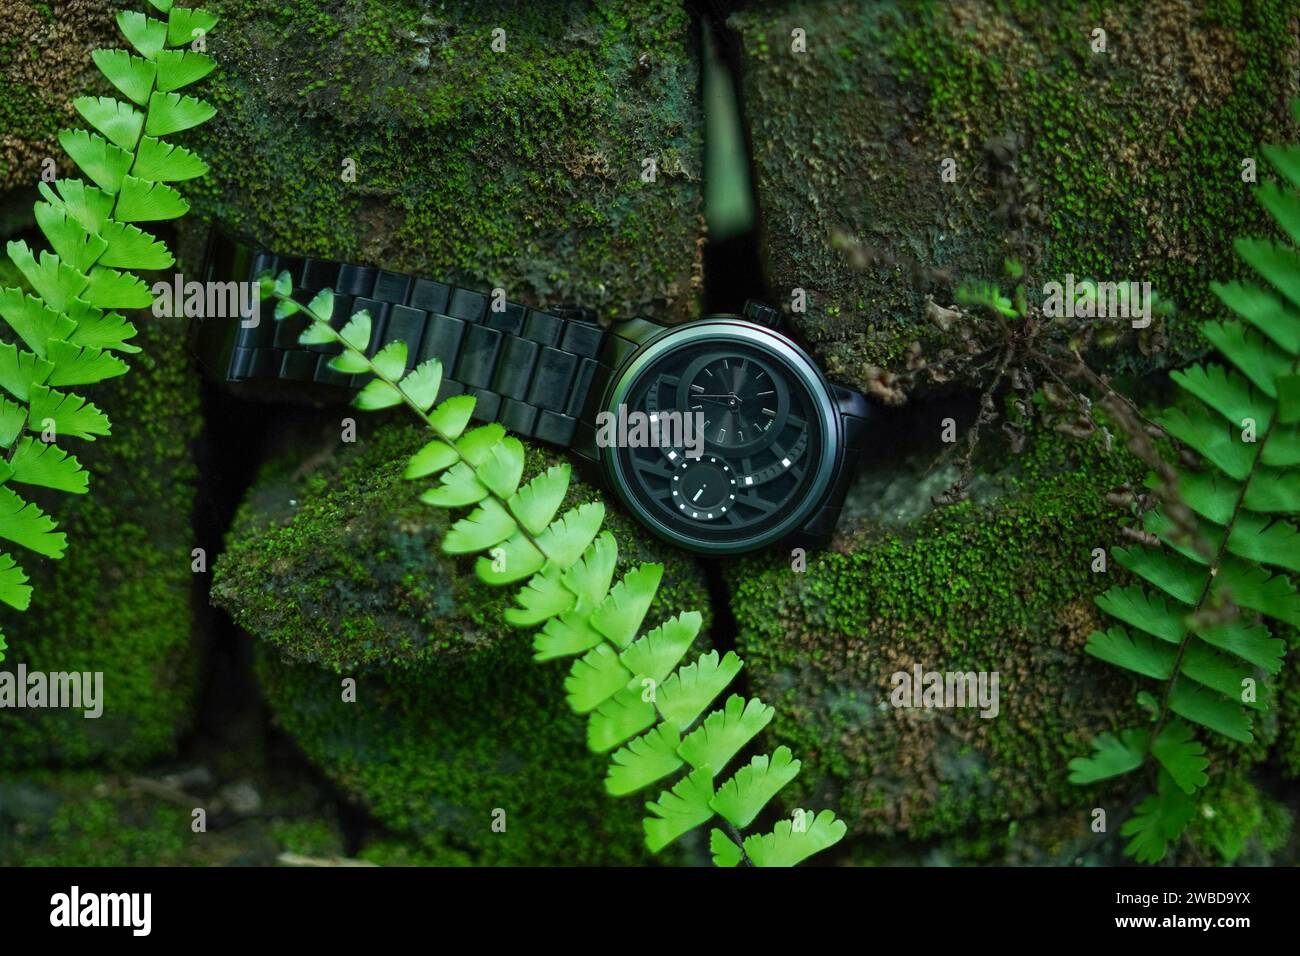 Schwarze Uhr auf der grünen Blatttapete hinter dem grünen Grassprossen im grünlichen Hintergrund Stockfoto